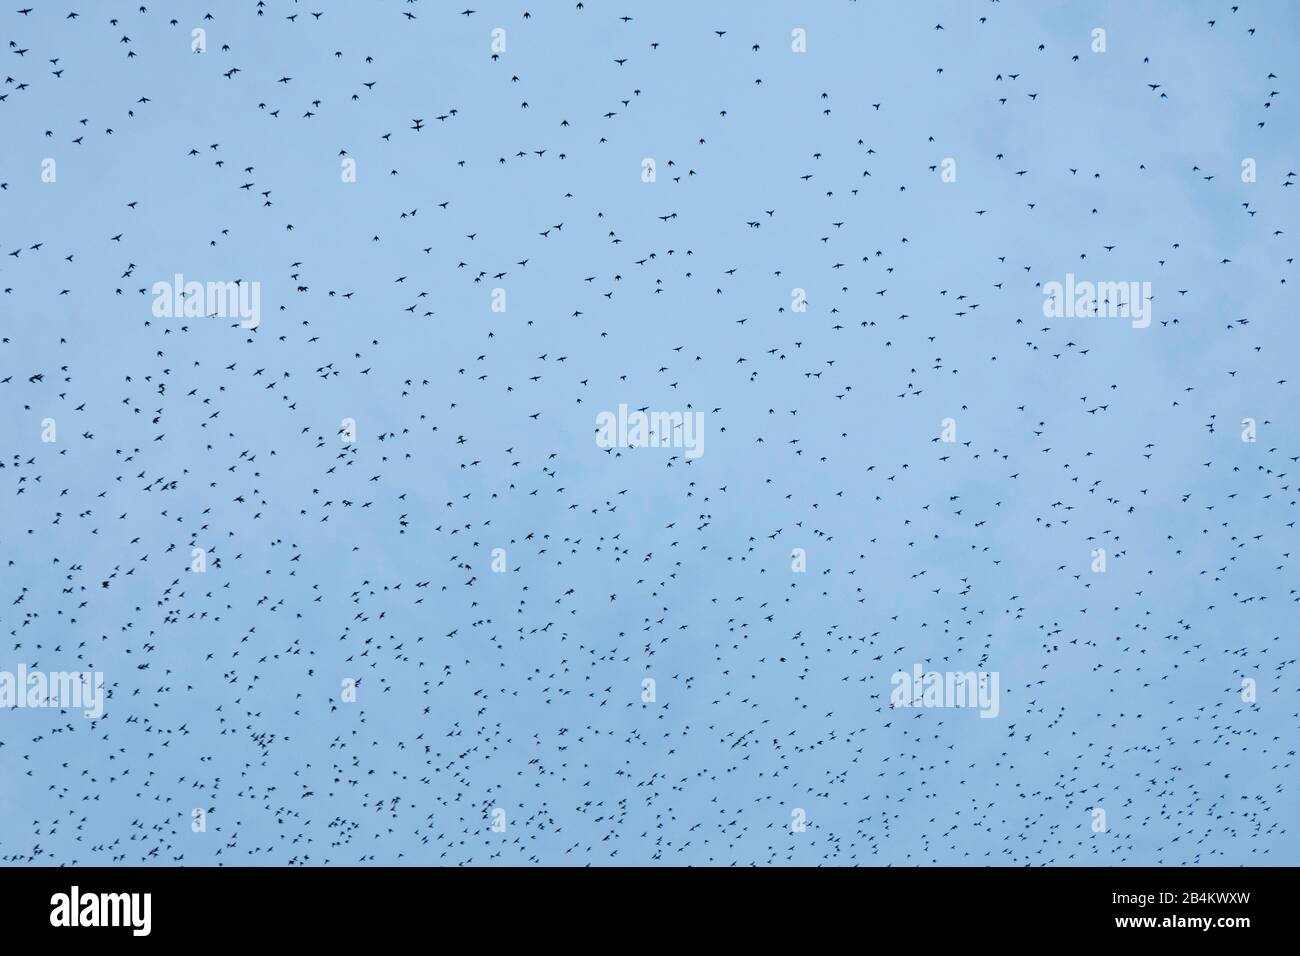 Europa, Danimarca, Bornholm. All'imbrunire, un gregge di starlings (Sturnidae) vola sopra i campi. Foto Stock